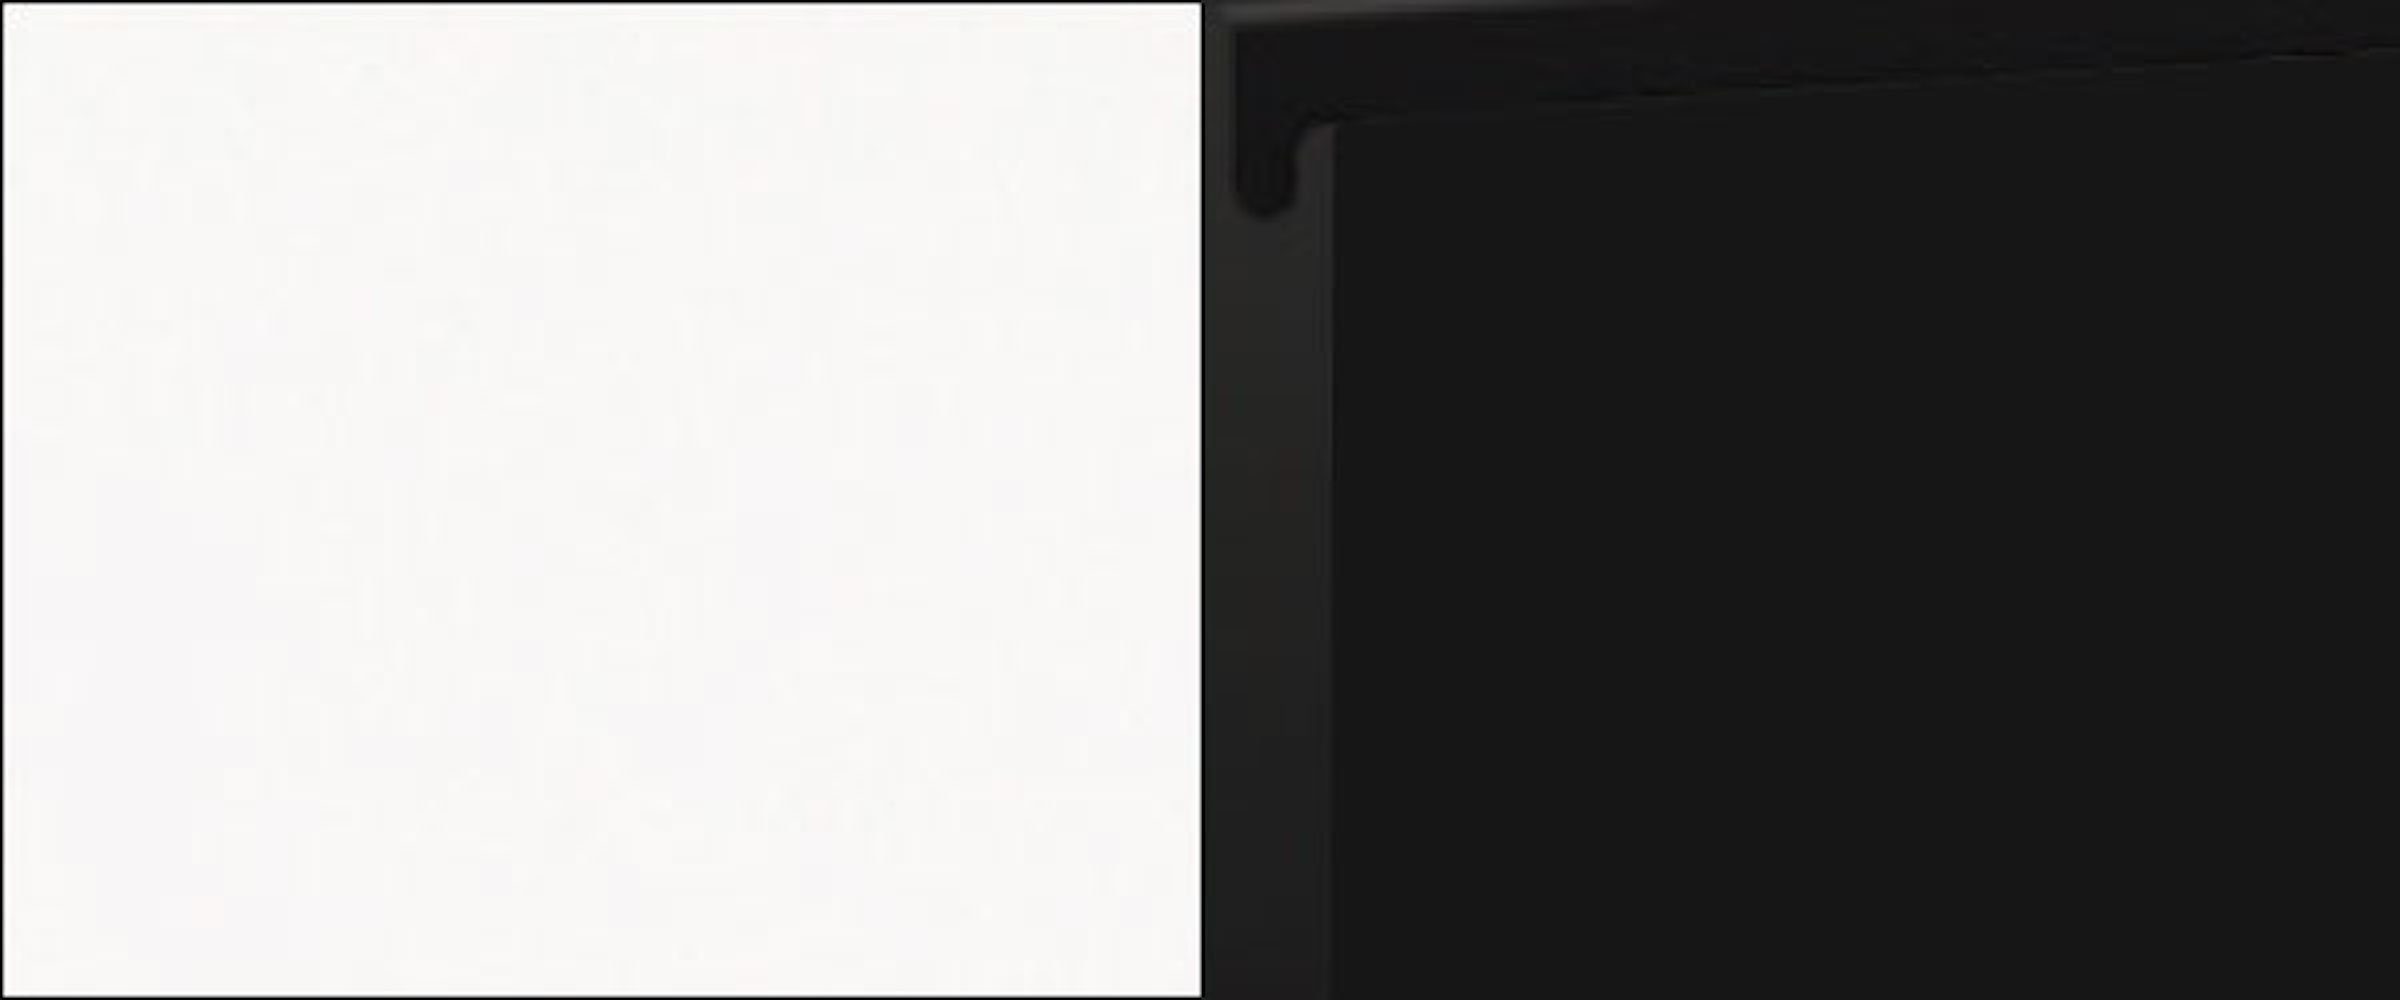 Klapphängeschrank super 30cm Feldmann-Wohnen Front-, Ausführung Velden wählbar 1-türig schwarz matt Korpusfarbe und grifflos